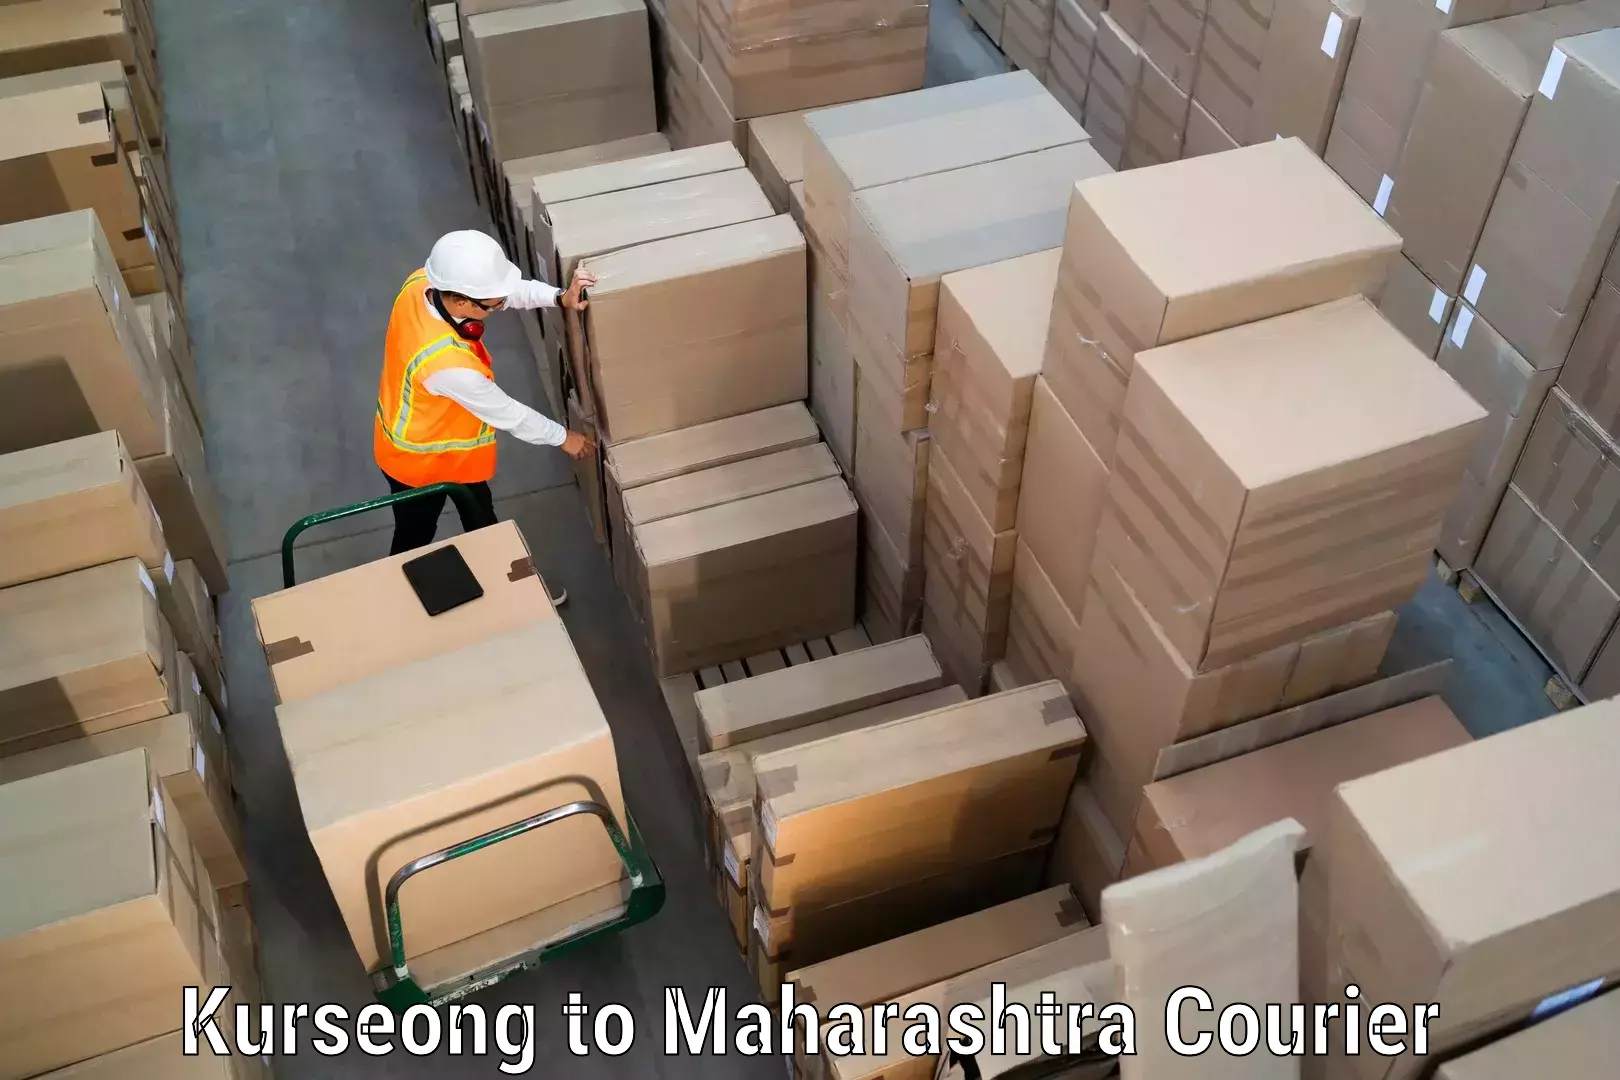 Urgent courier needs Kurseong to Pandharkawada